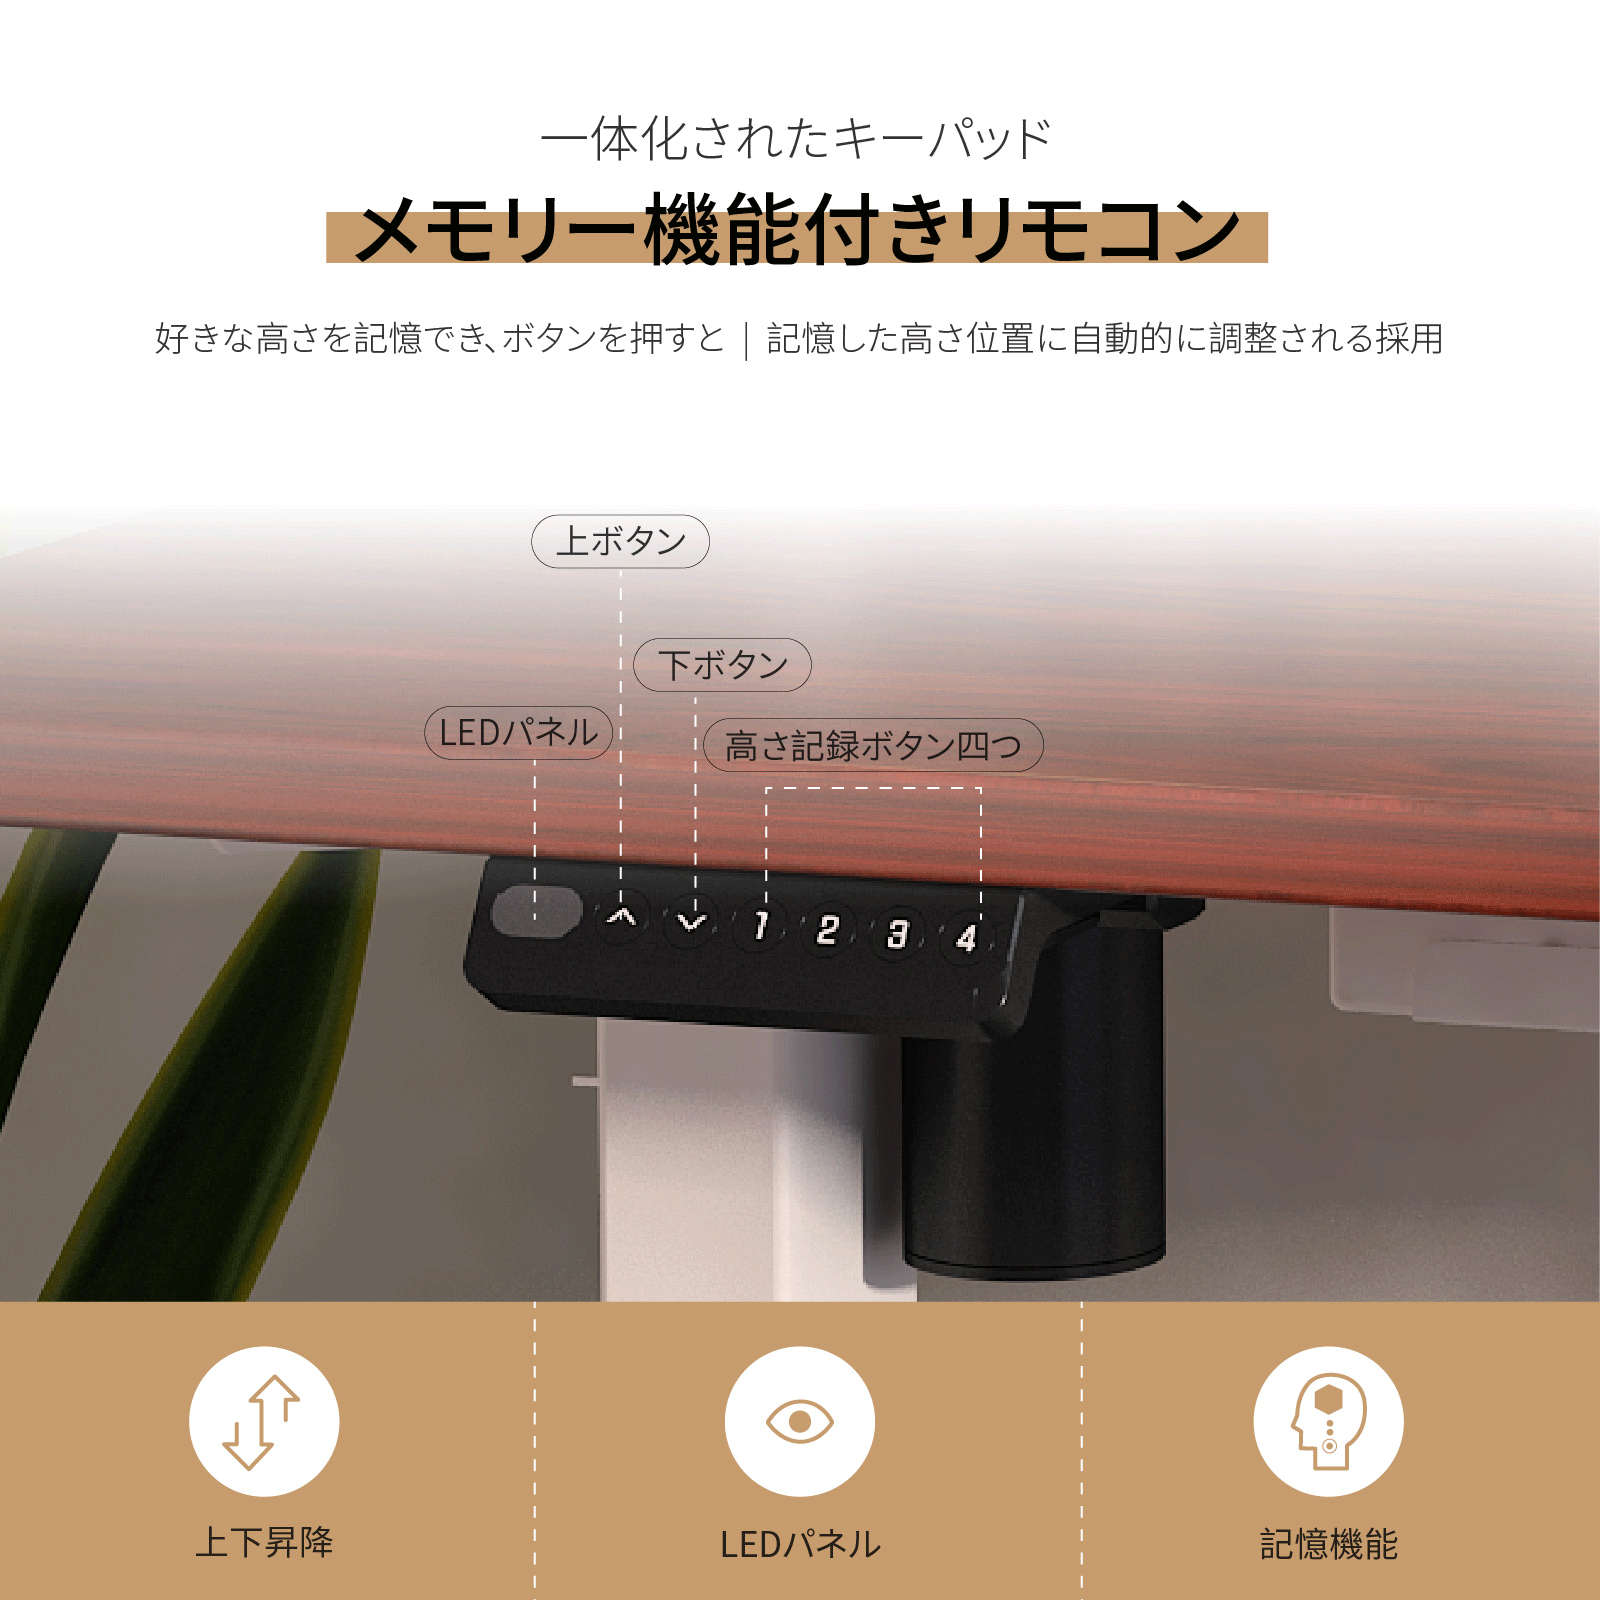 全日本送料無料 FlexiSpot FLEXISPOT EF1 電動昇降デスク EF1 脚のみ 電動昇降デスク ホワイト フレキシスポット  フレキシスポット 机/テーブル